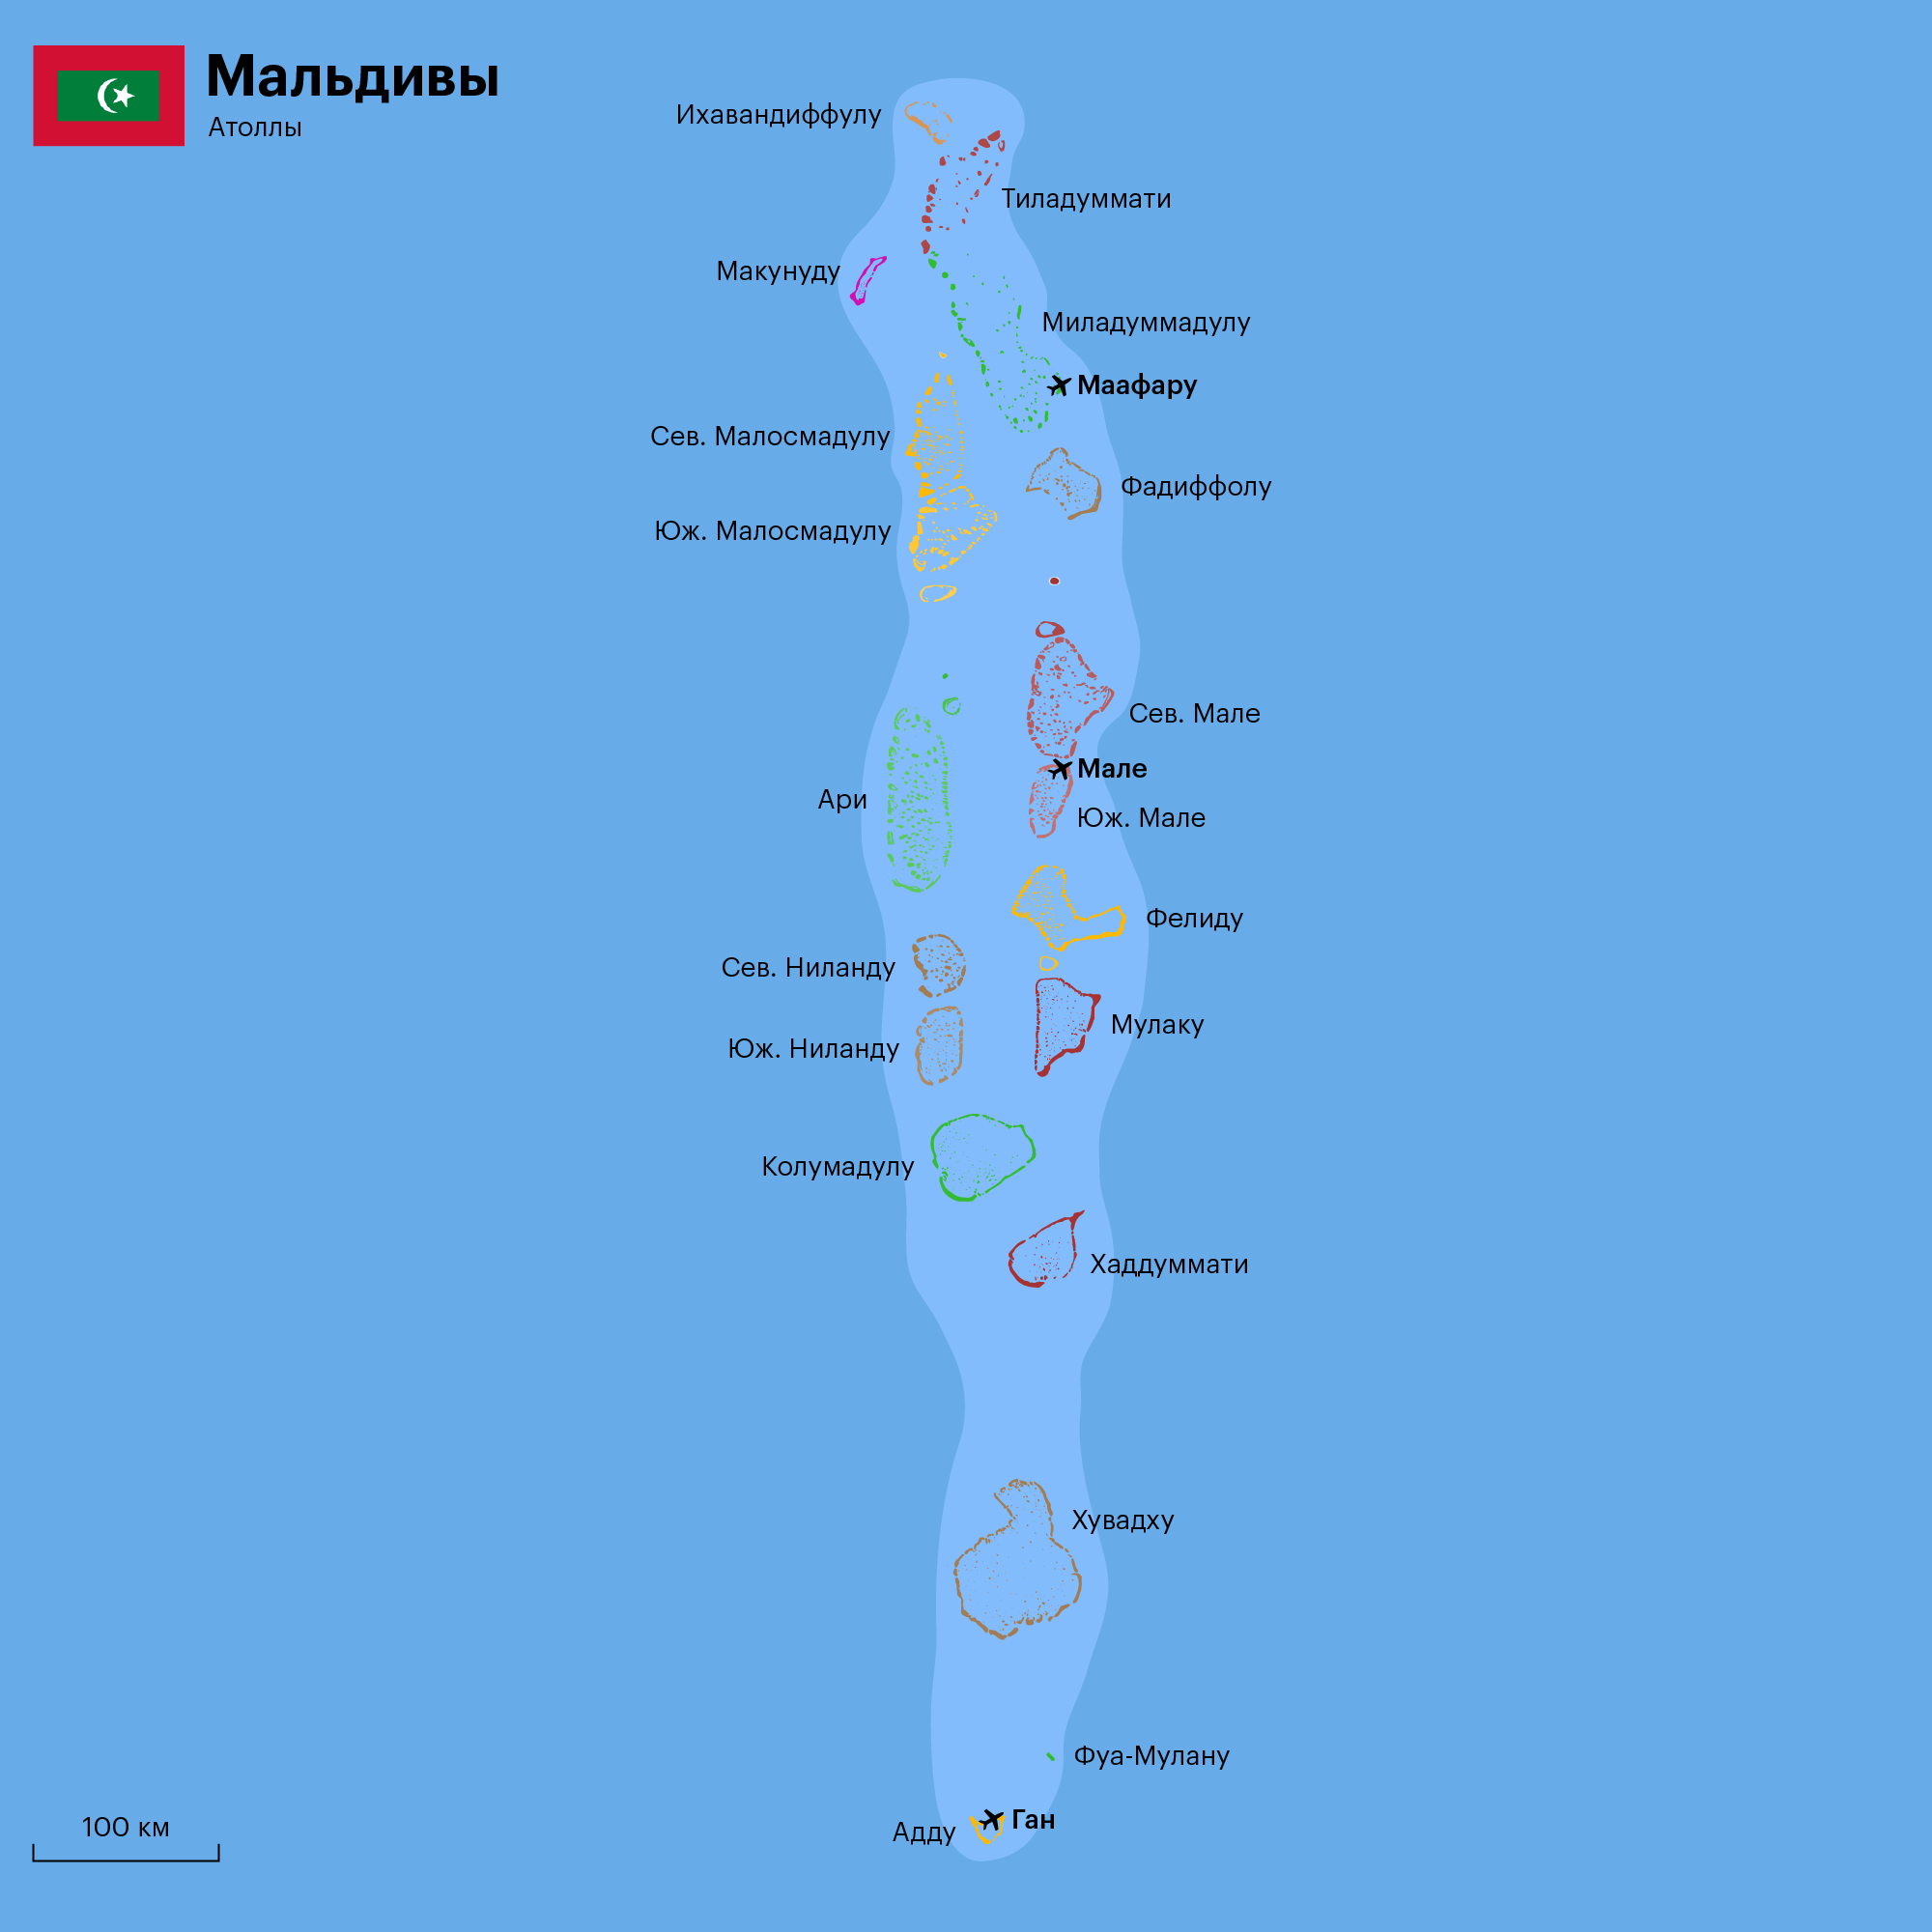 Путешествие на Мальдивы самостоятельно – наши советы и рекомендации